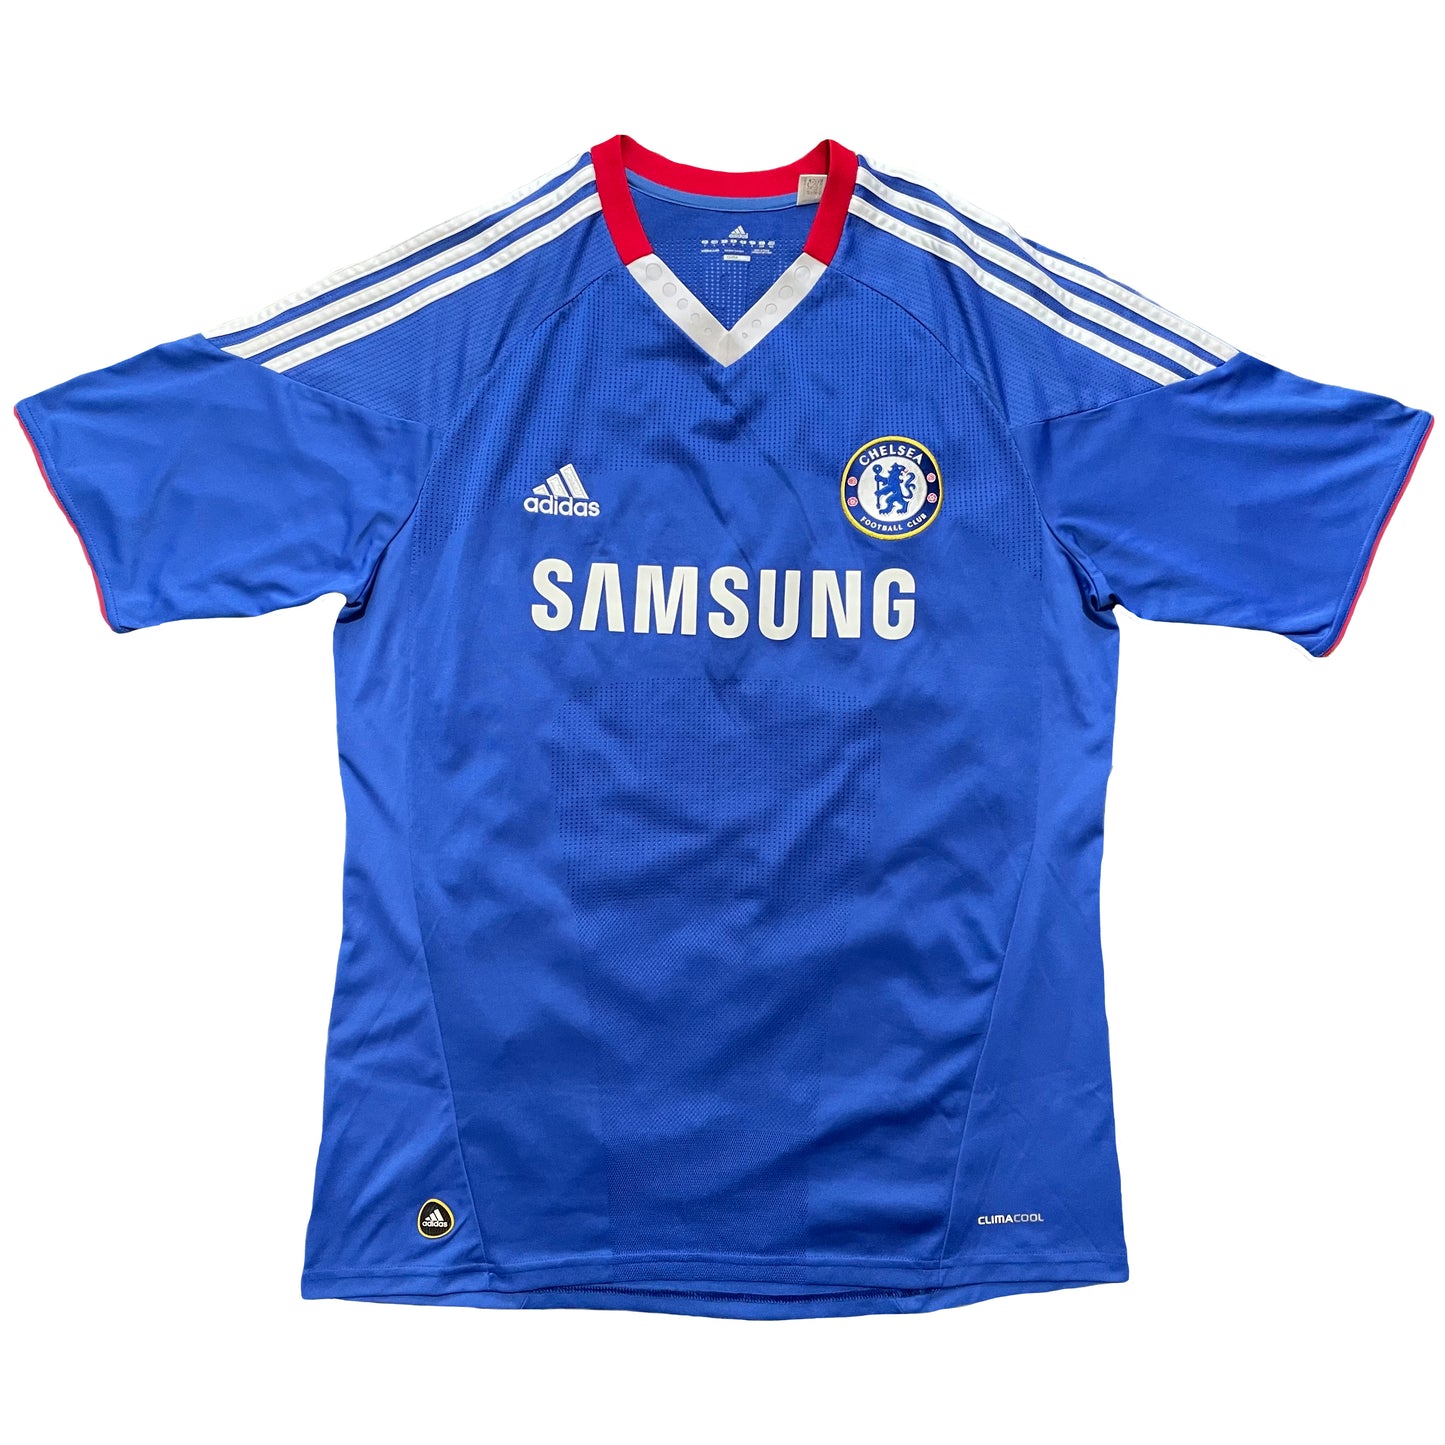 <tc>2010-2011 Chelsea FC camiseta local #8 Lampard (L)</tc>